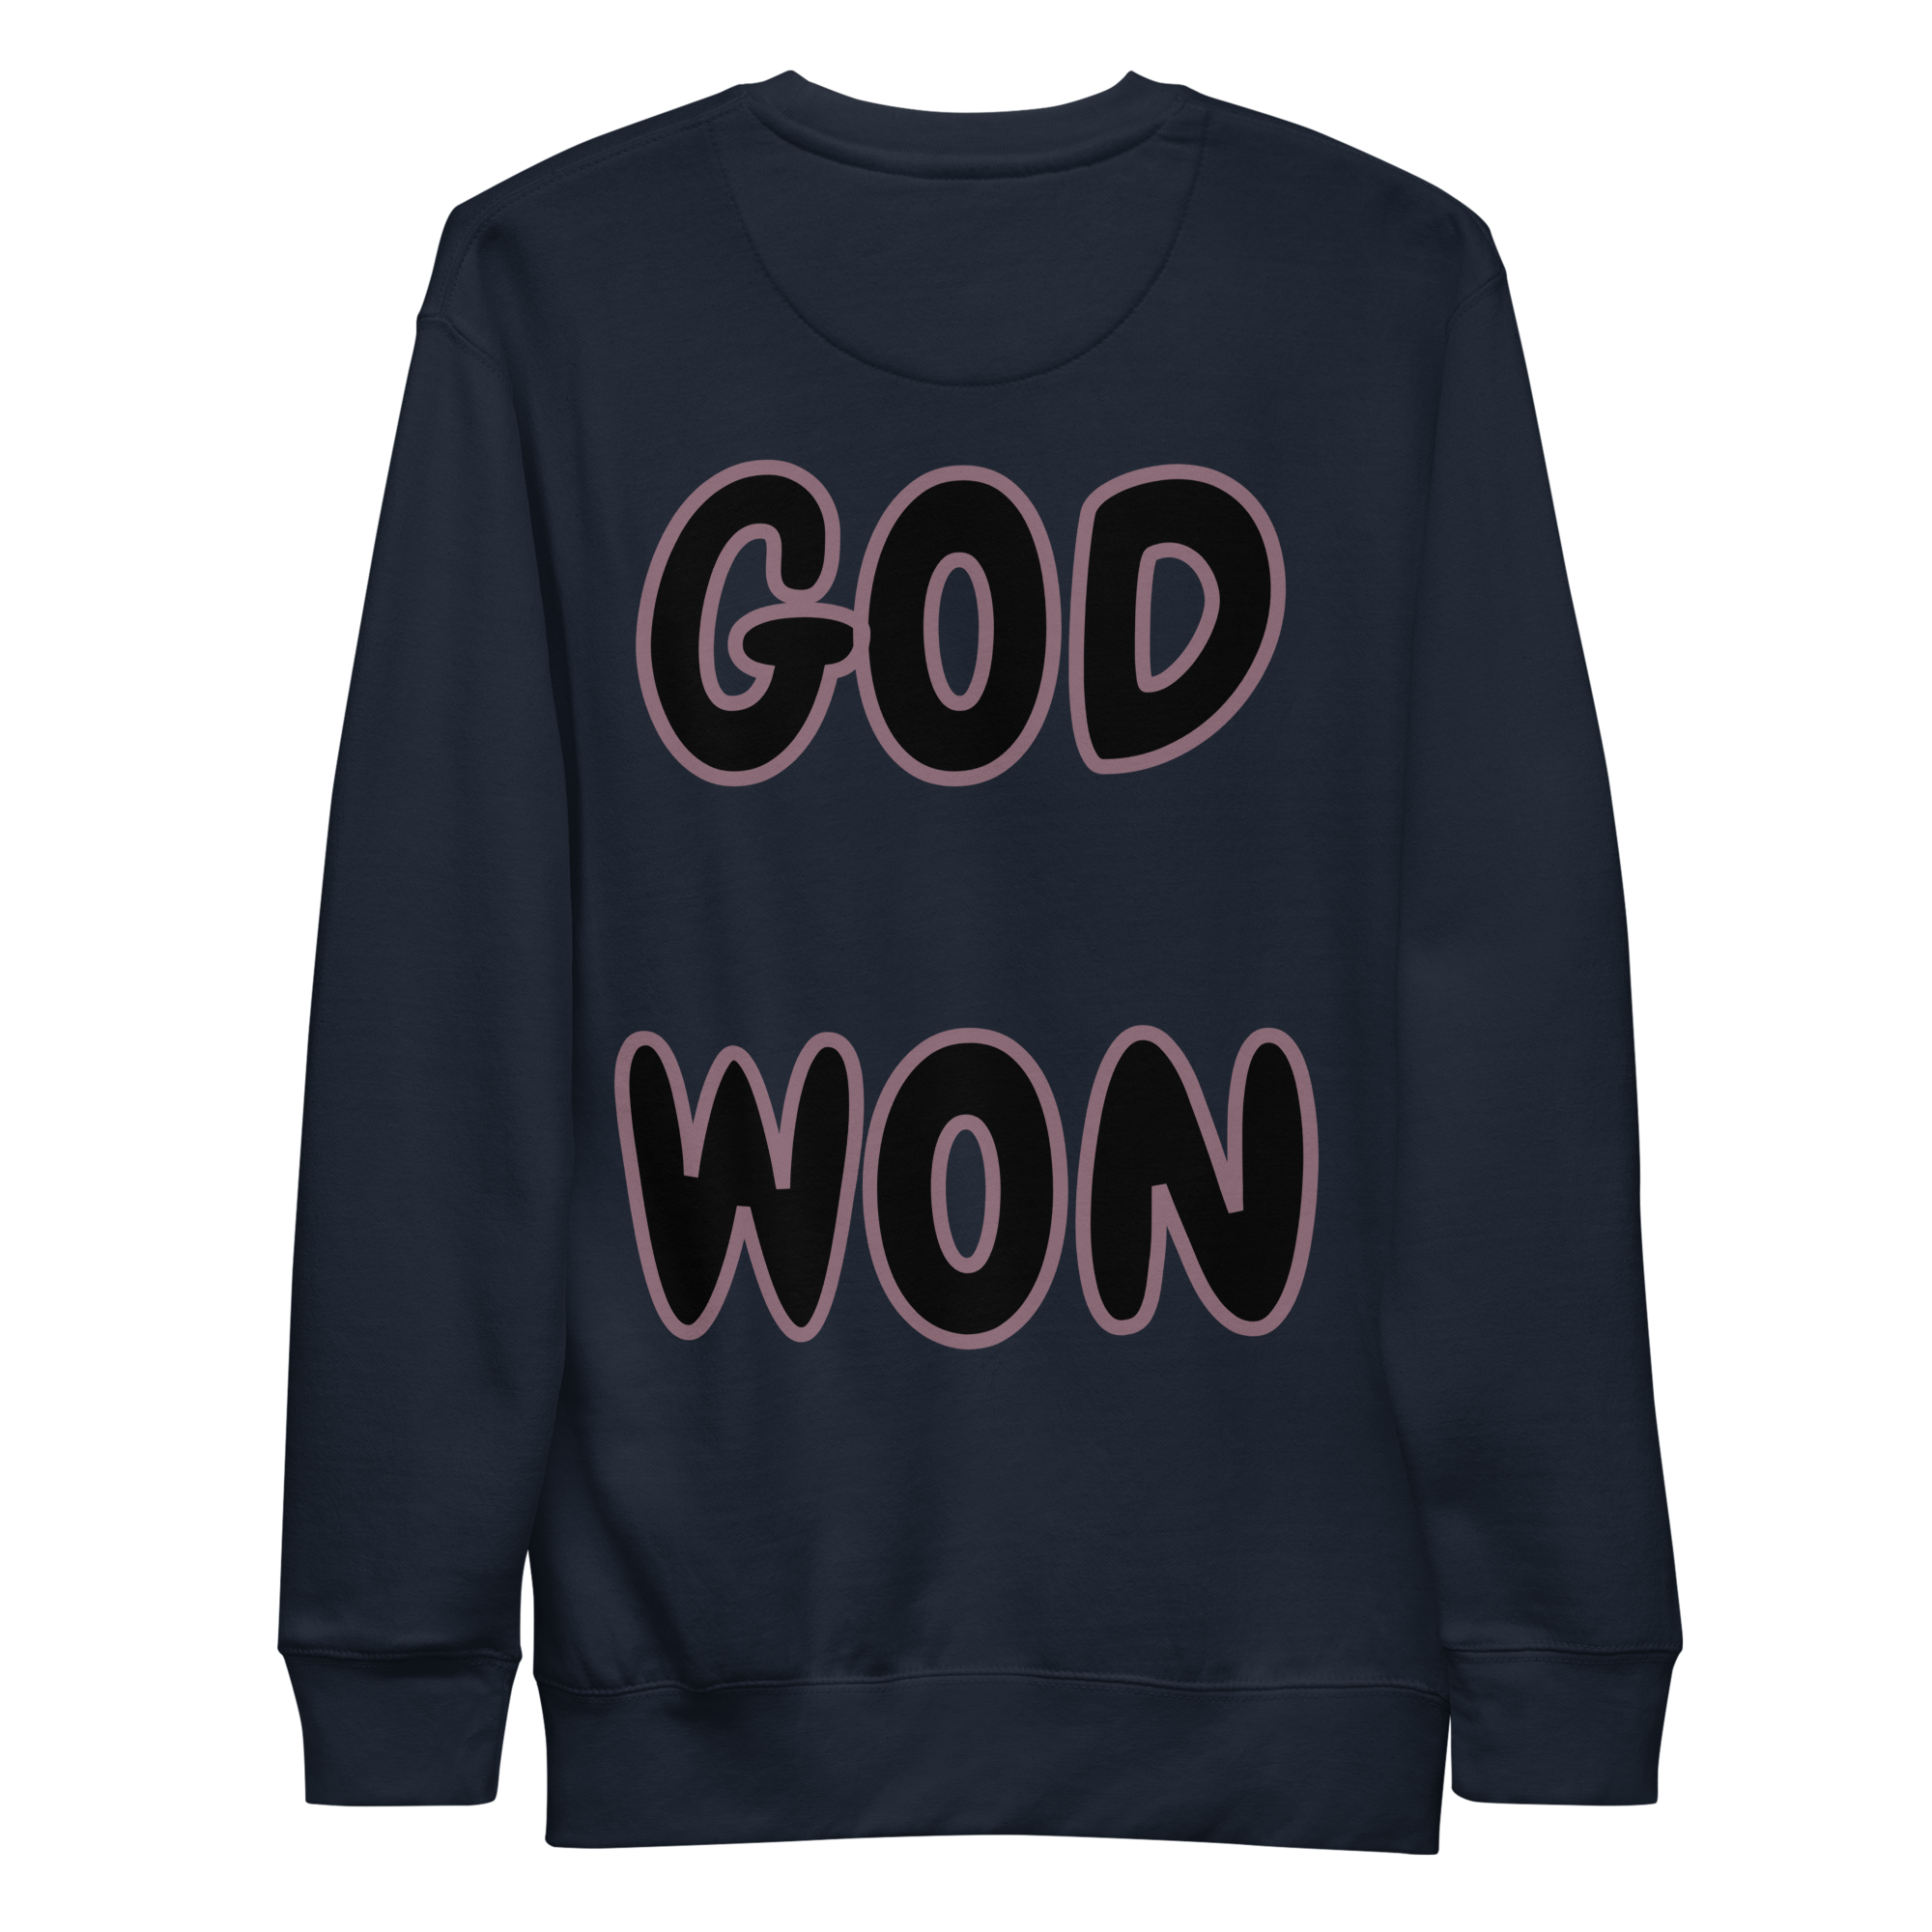 Preach God Won Unisex Premium Sweatshirt